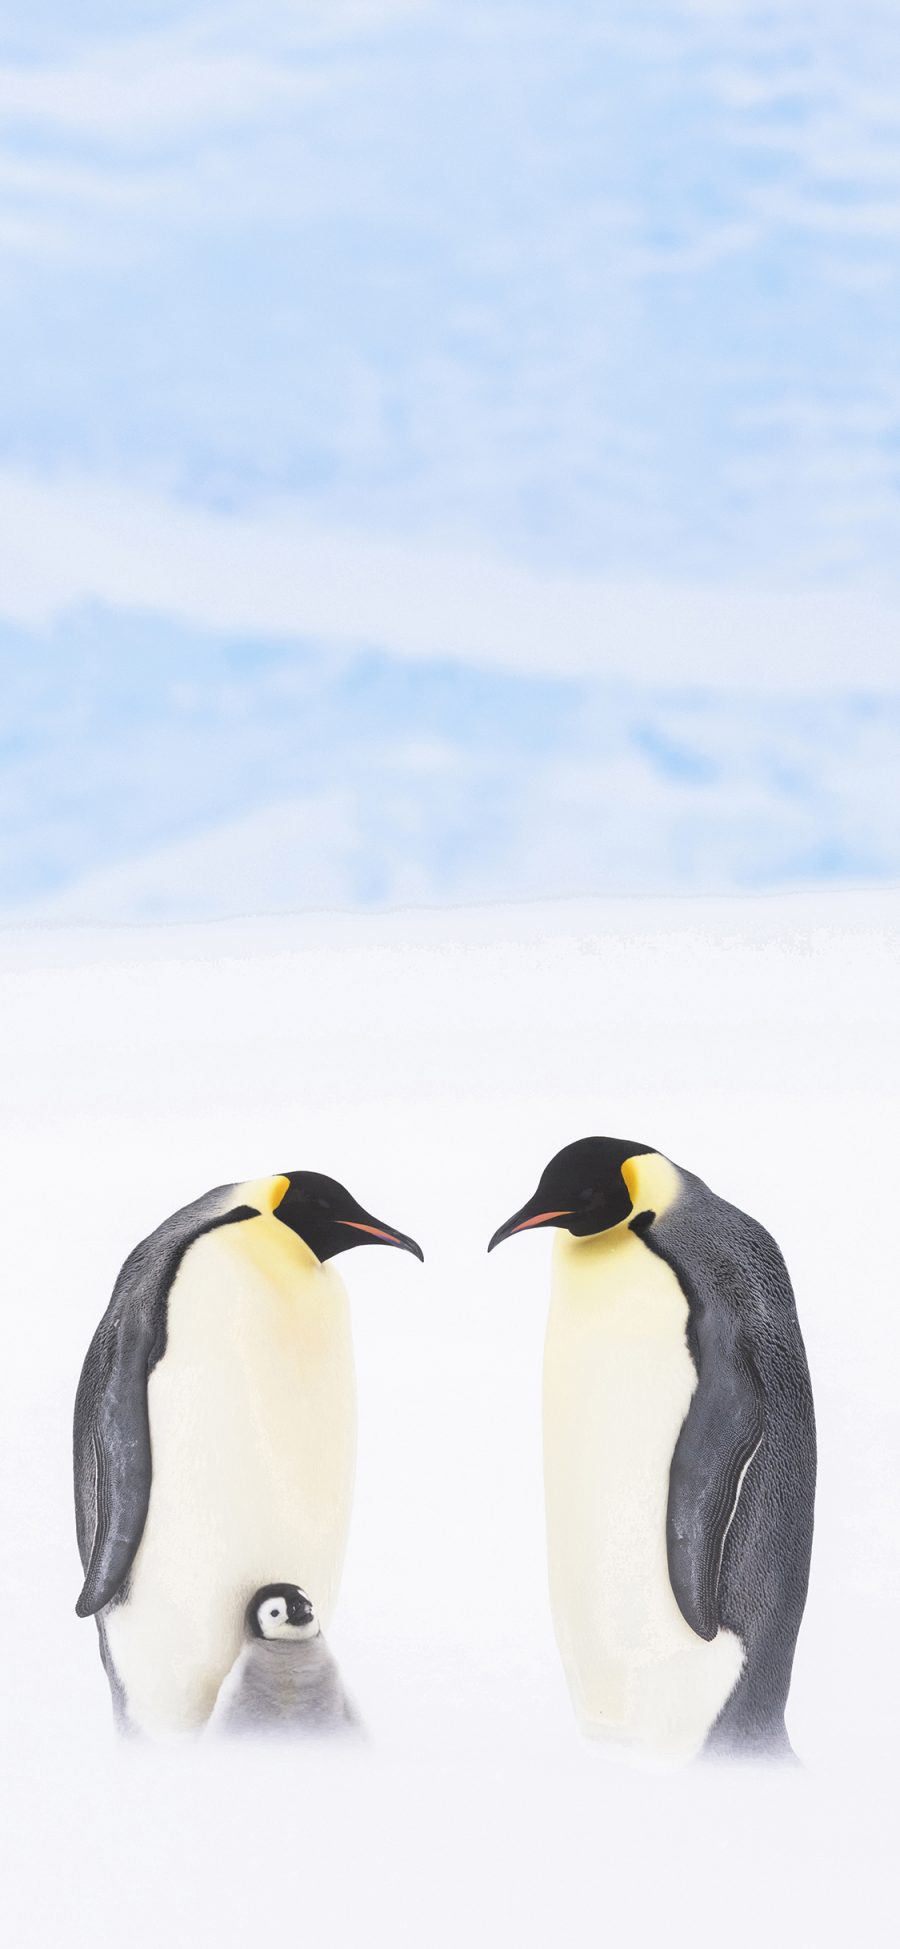 [2436×1125]企鹅 南极 冰川 王朝纪录片 苹果手机壁纸图片